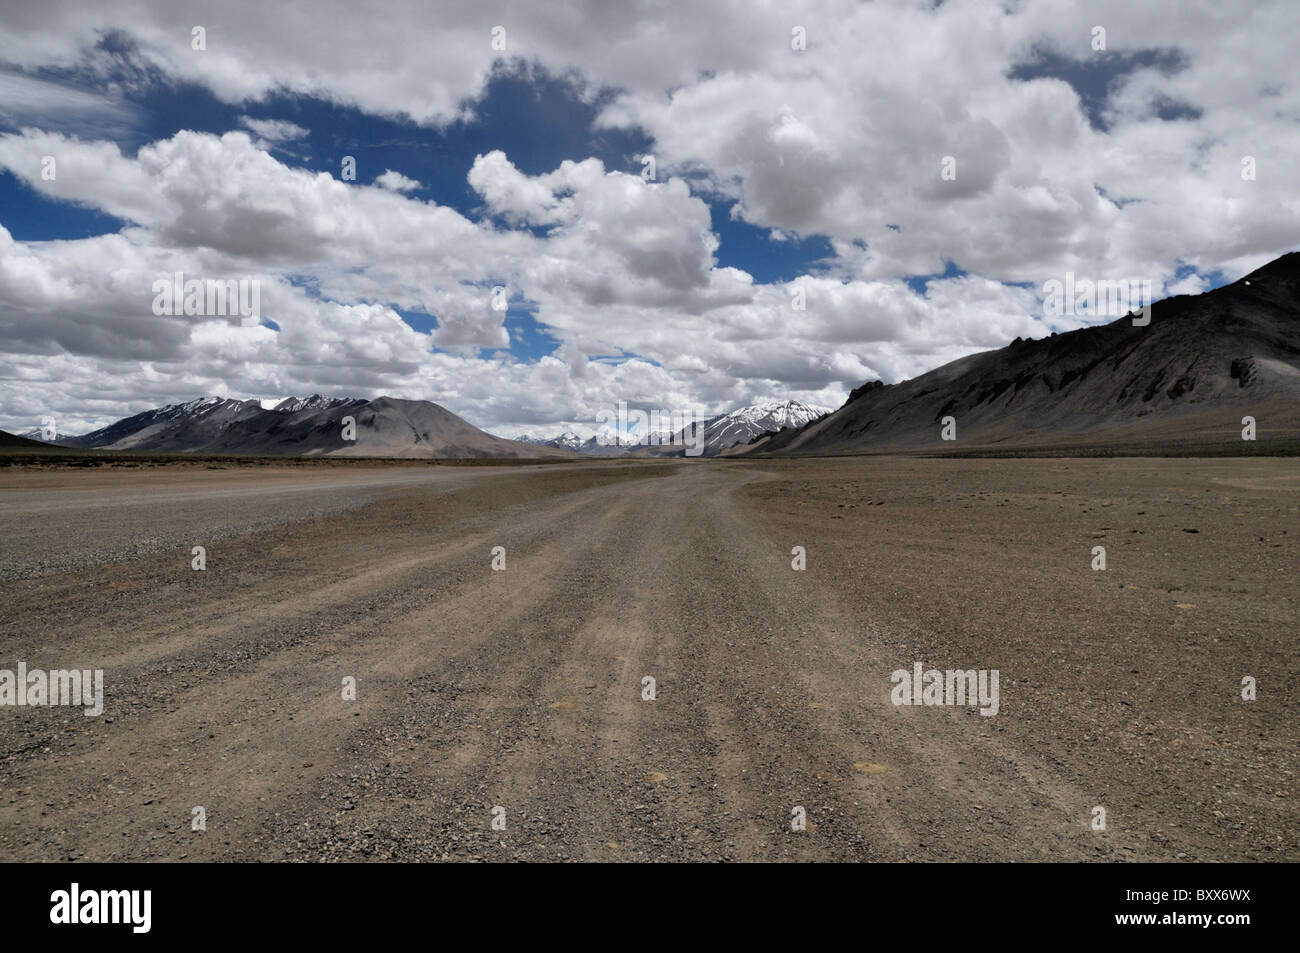 Une section de la route reliant Manali et Leh en Inde, souvent surnommée la "Route de l'Himalaya'. Banque D'Images